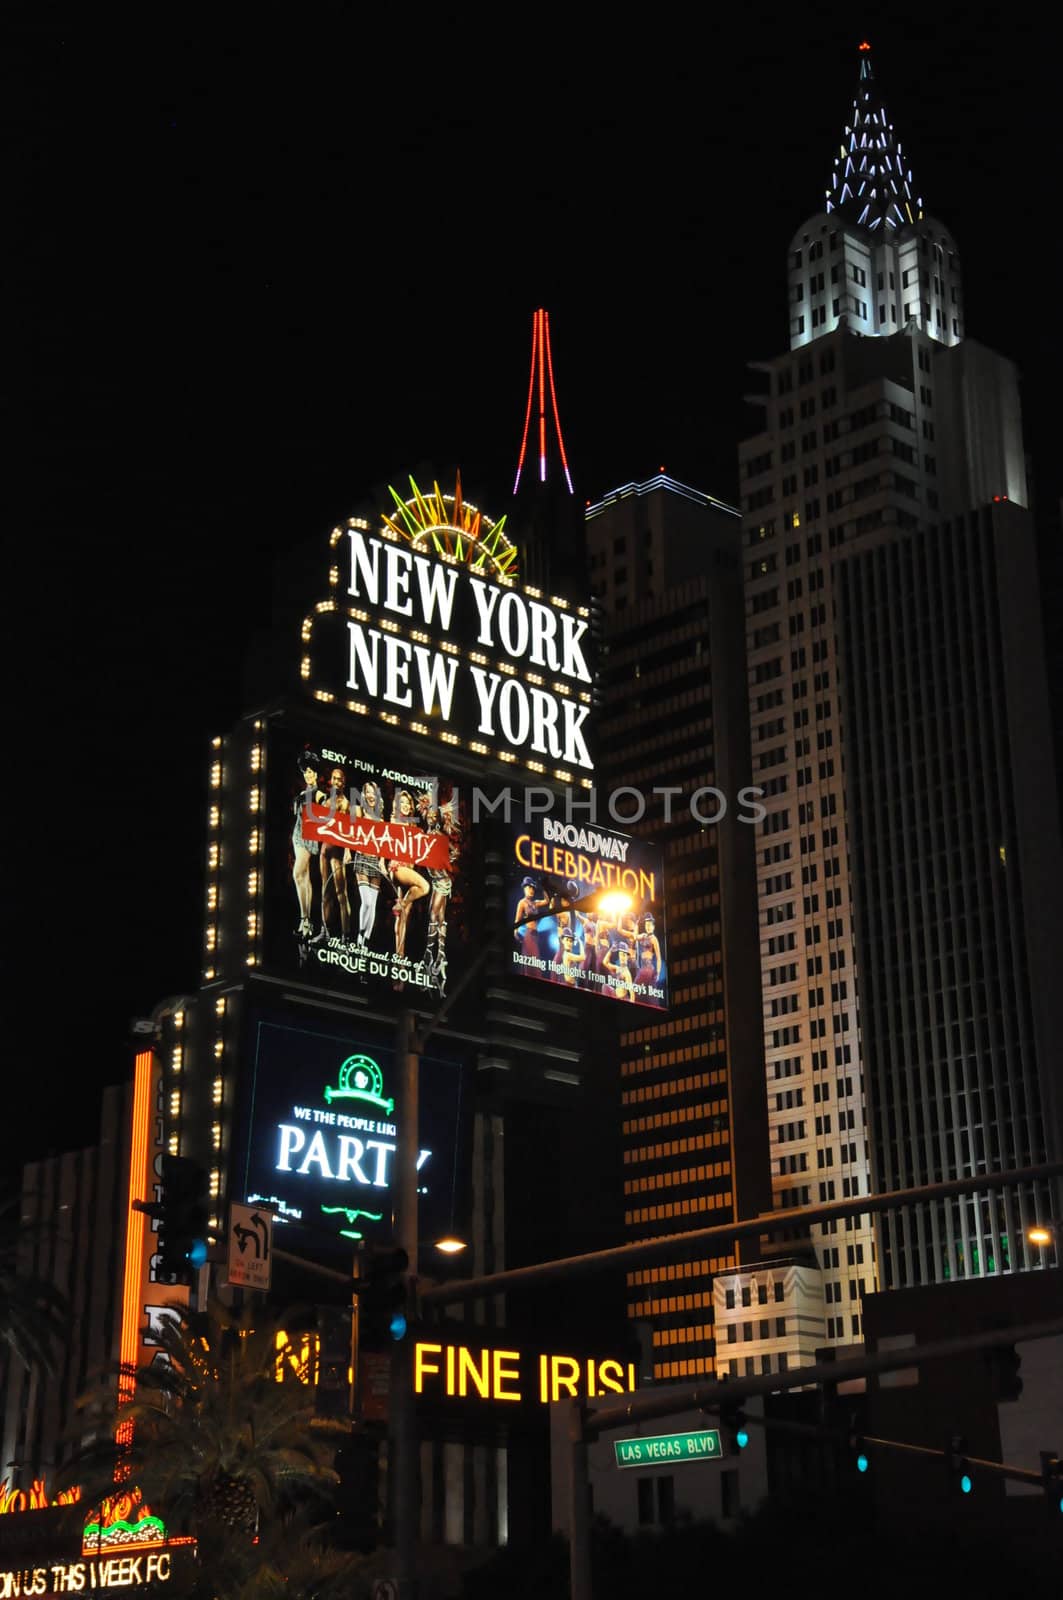 New York New York Hotel and Casino in Las Vegas by sainaniritu